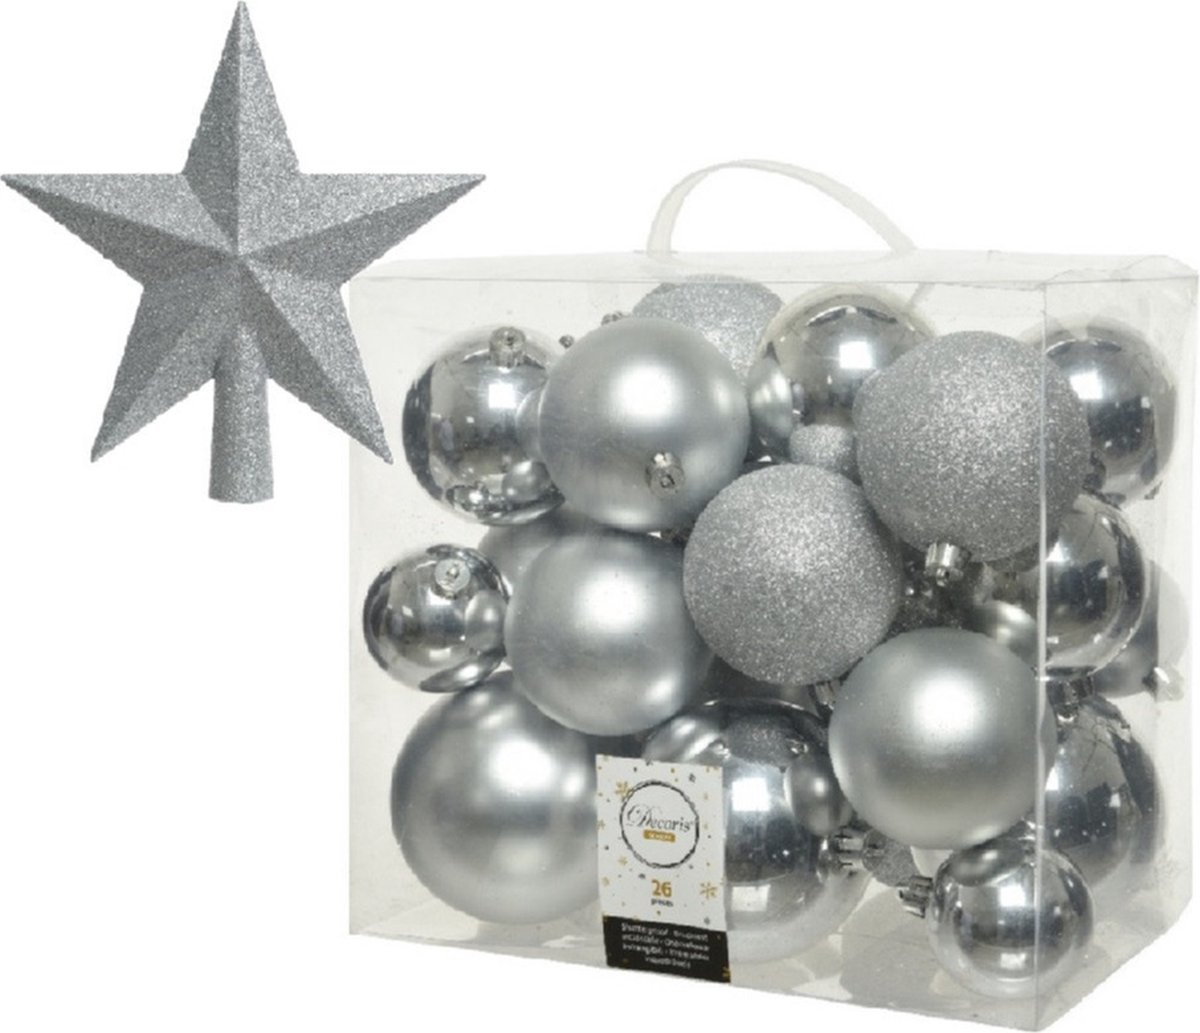 Kerstversiering kunststof kerstballen zilver 6-8-10 cm pakket van 27x stuks - Met kunststof ster piek van 19 cm